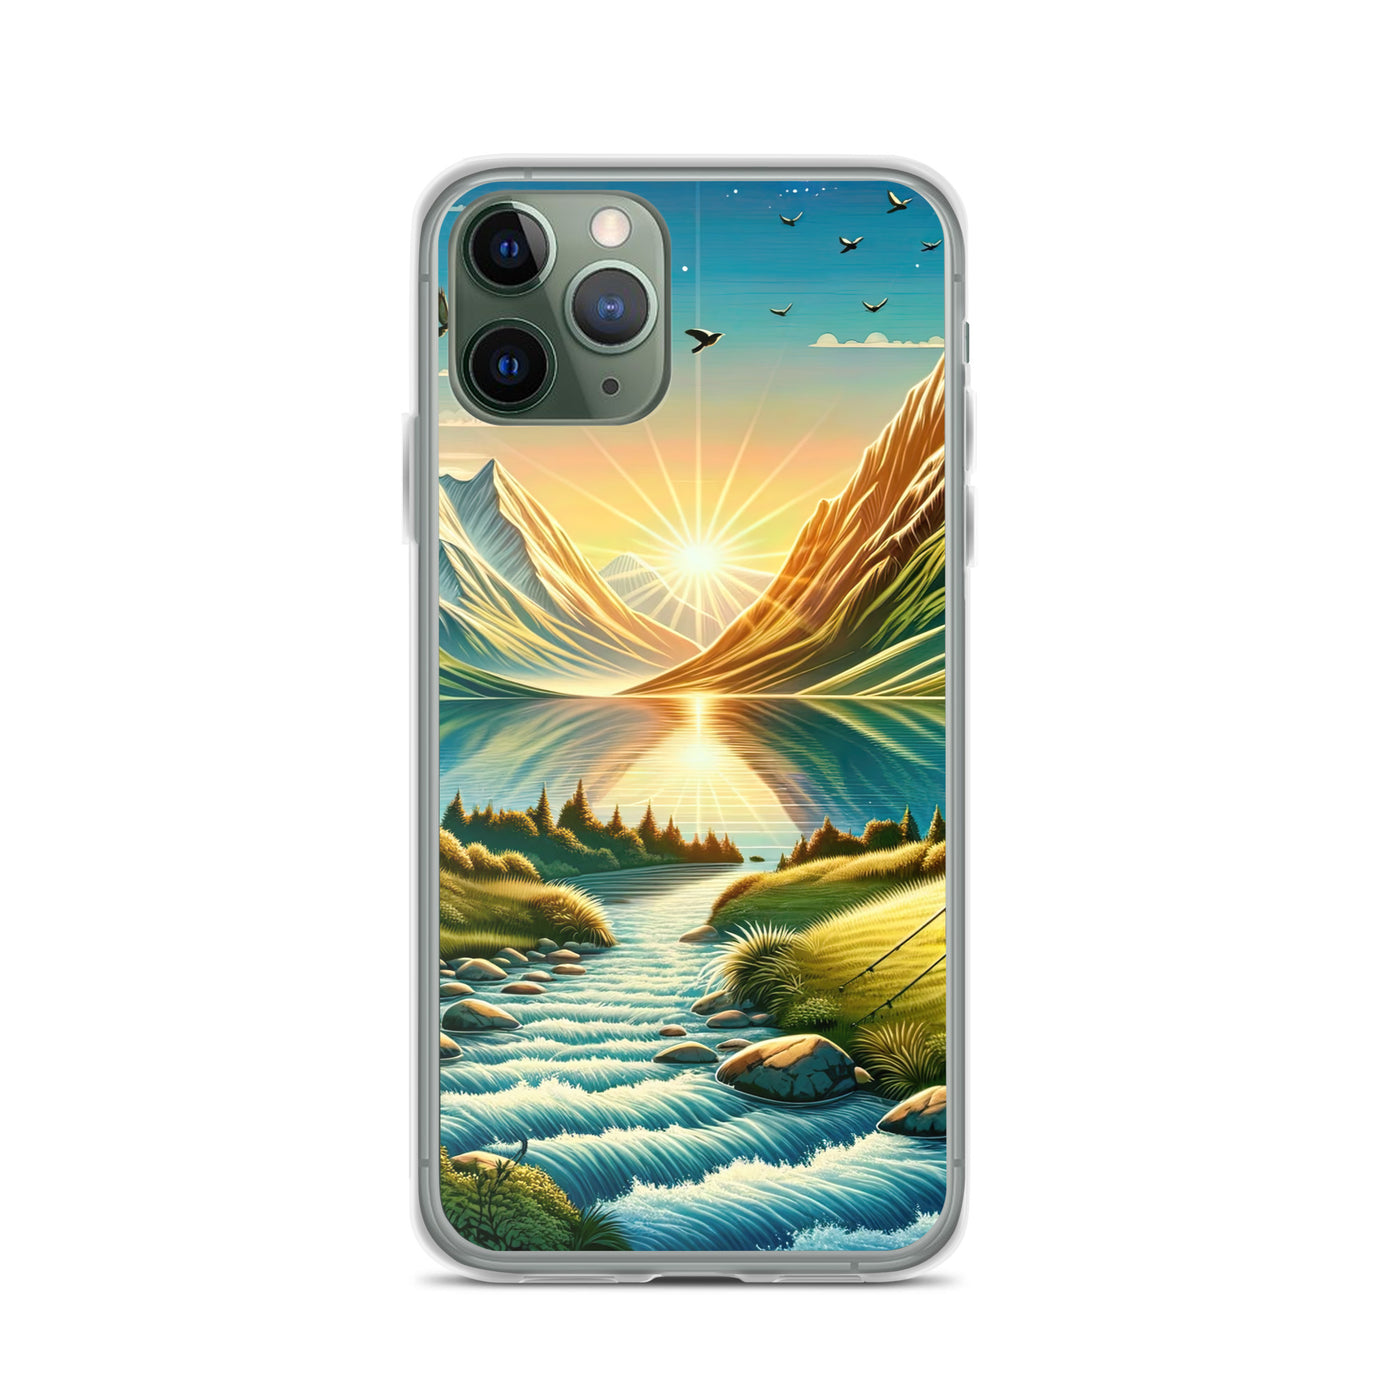 Zelt im Alpenmorgen mit goldenem Licht, Schneebergen und unberührten Seen - iPhone Schutzhülle (durchsichtig) berge xxx yyy zzz iPhone 11 Pro